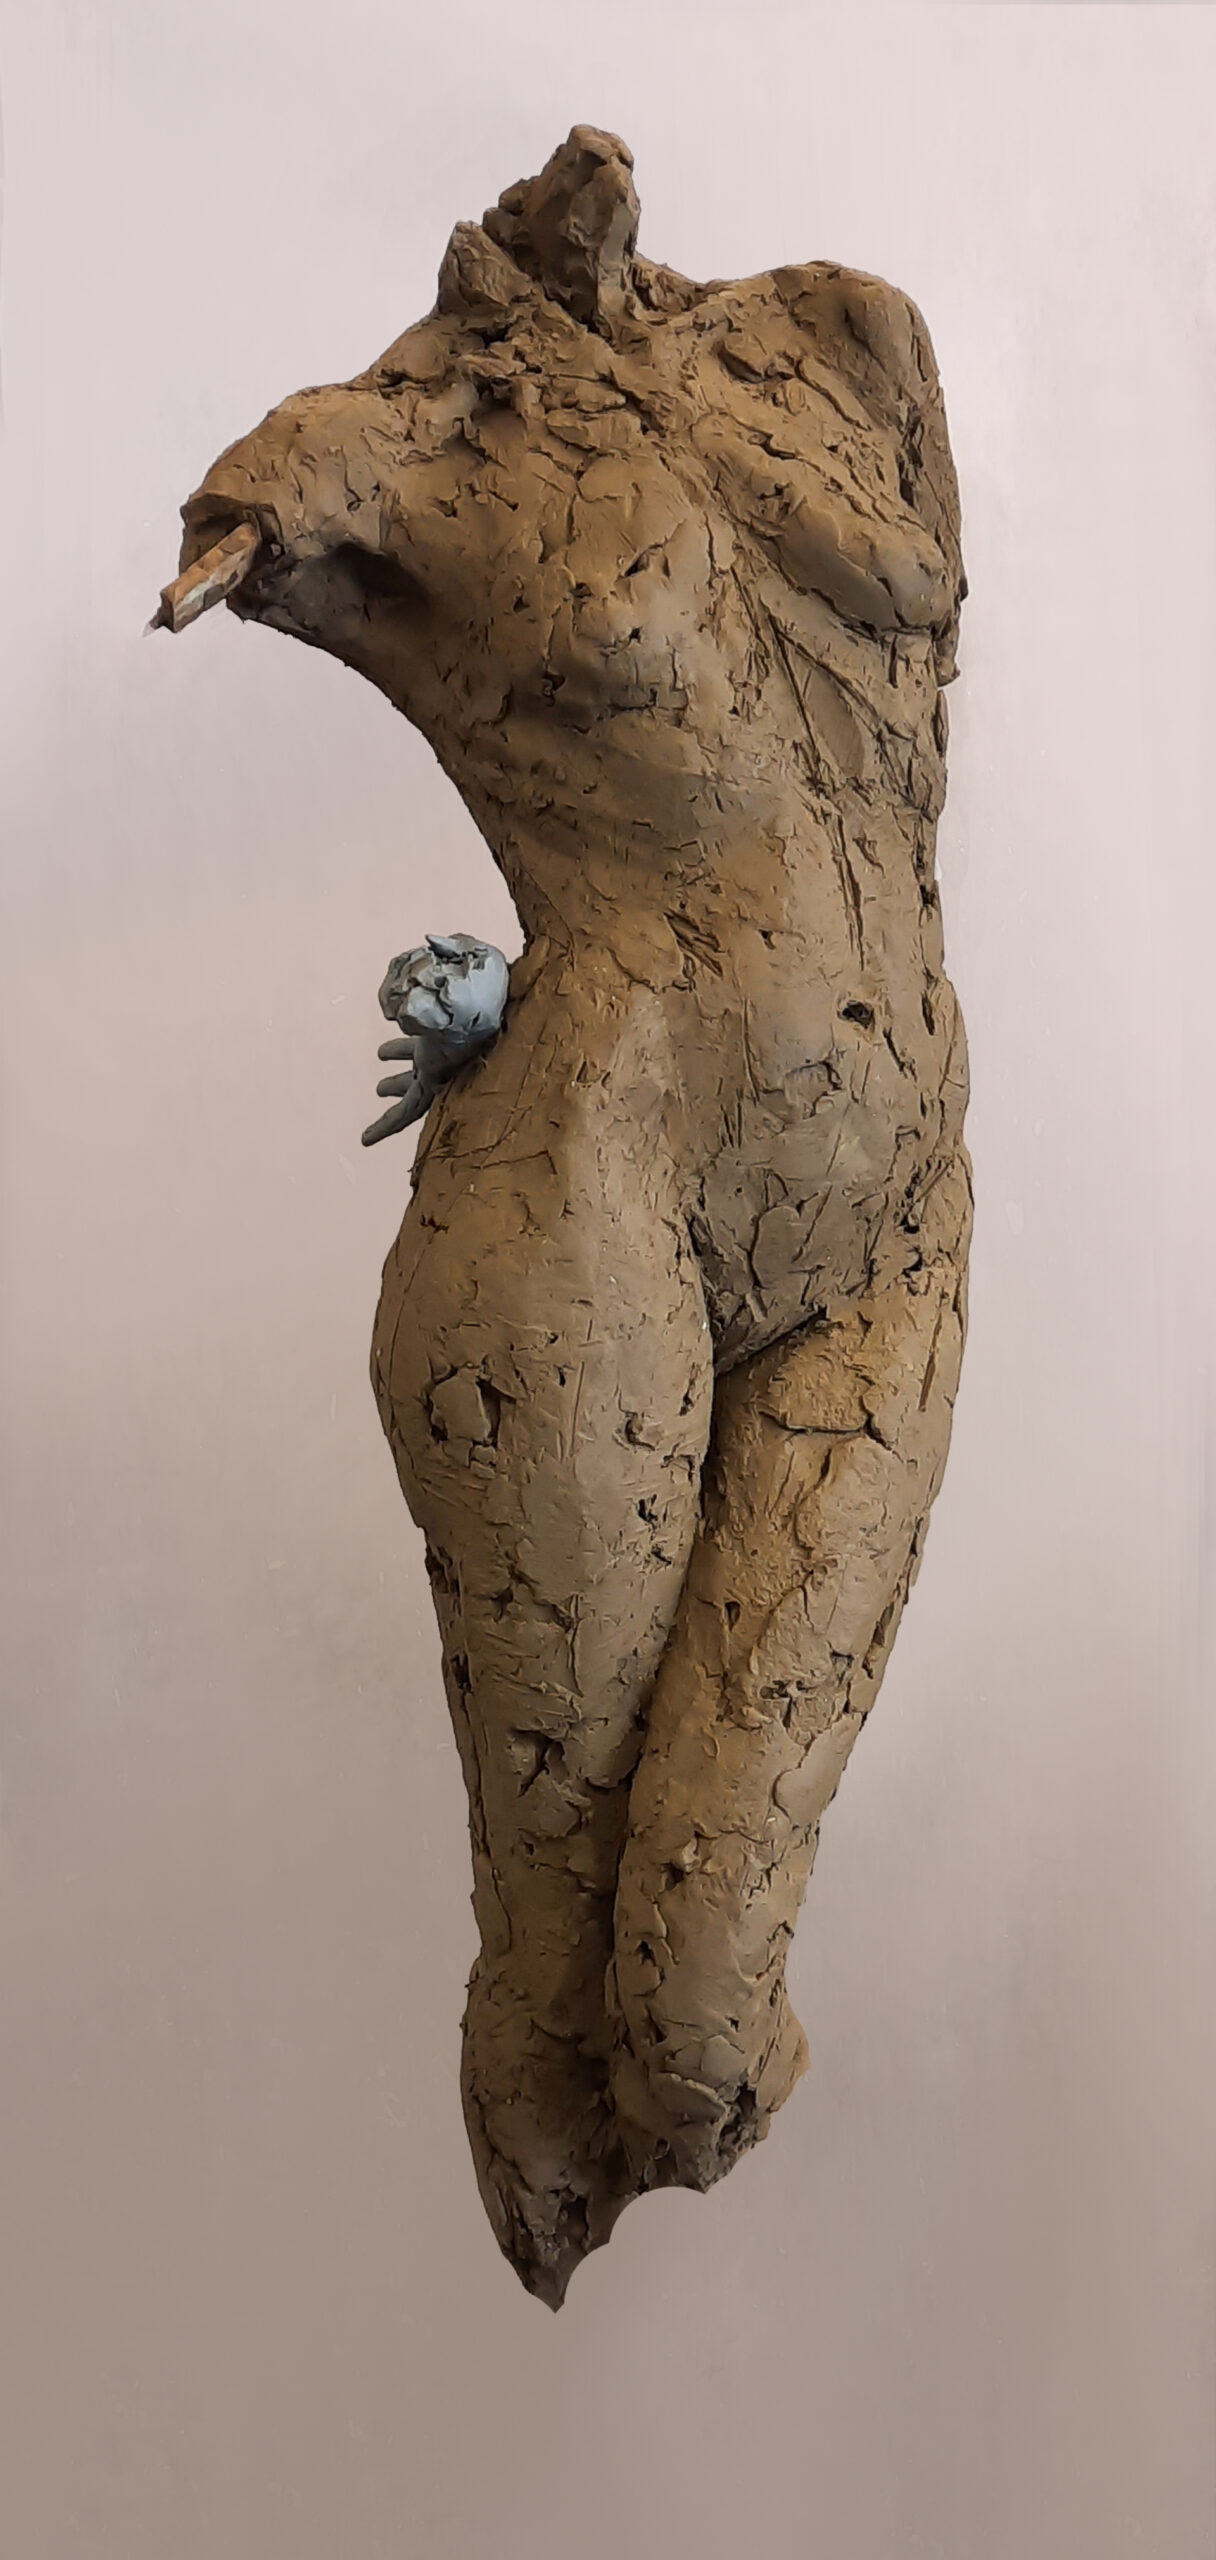 zdjęcie przedstawia rzeźbę z gliny- postać kobiecą w ujęciu od szyi do kolan, bez rąk,  jedna noga lekko ugięta. Struktura rzeźby fakturalna,ujęcie boczne